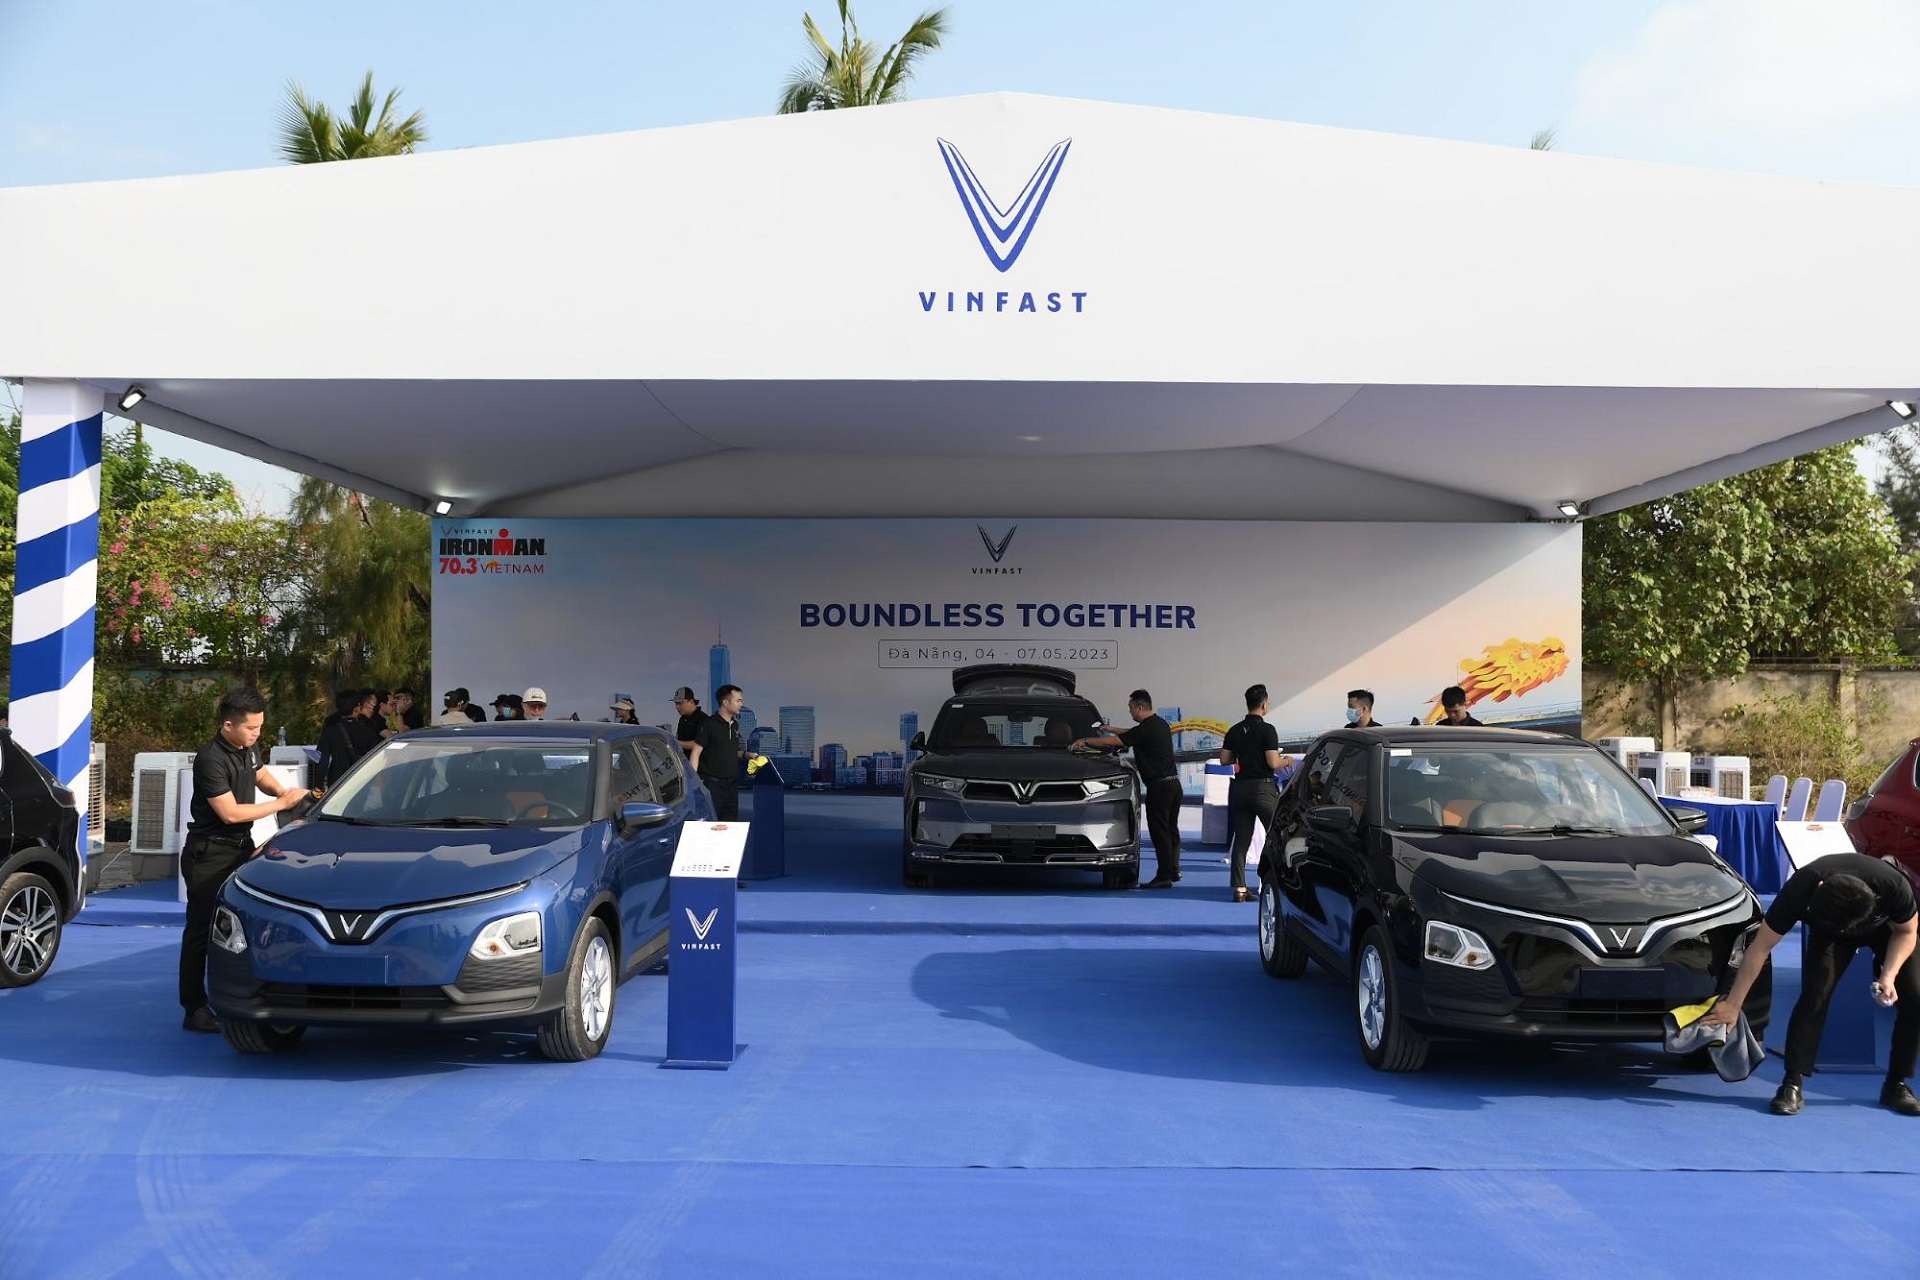 Khu vực lái thử được bố trí chuyên nghiệp với các mẫu xe VinFast từ mọi phân khúc, cùng các kỹ thuật viên sẵn sàng hỗ trợ khách hàng trải nghiệm.